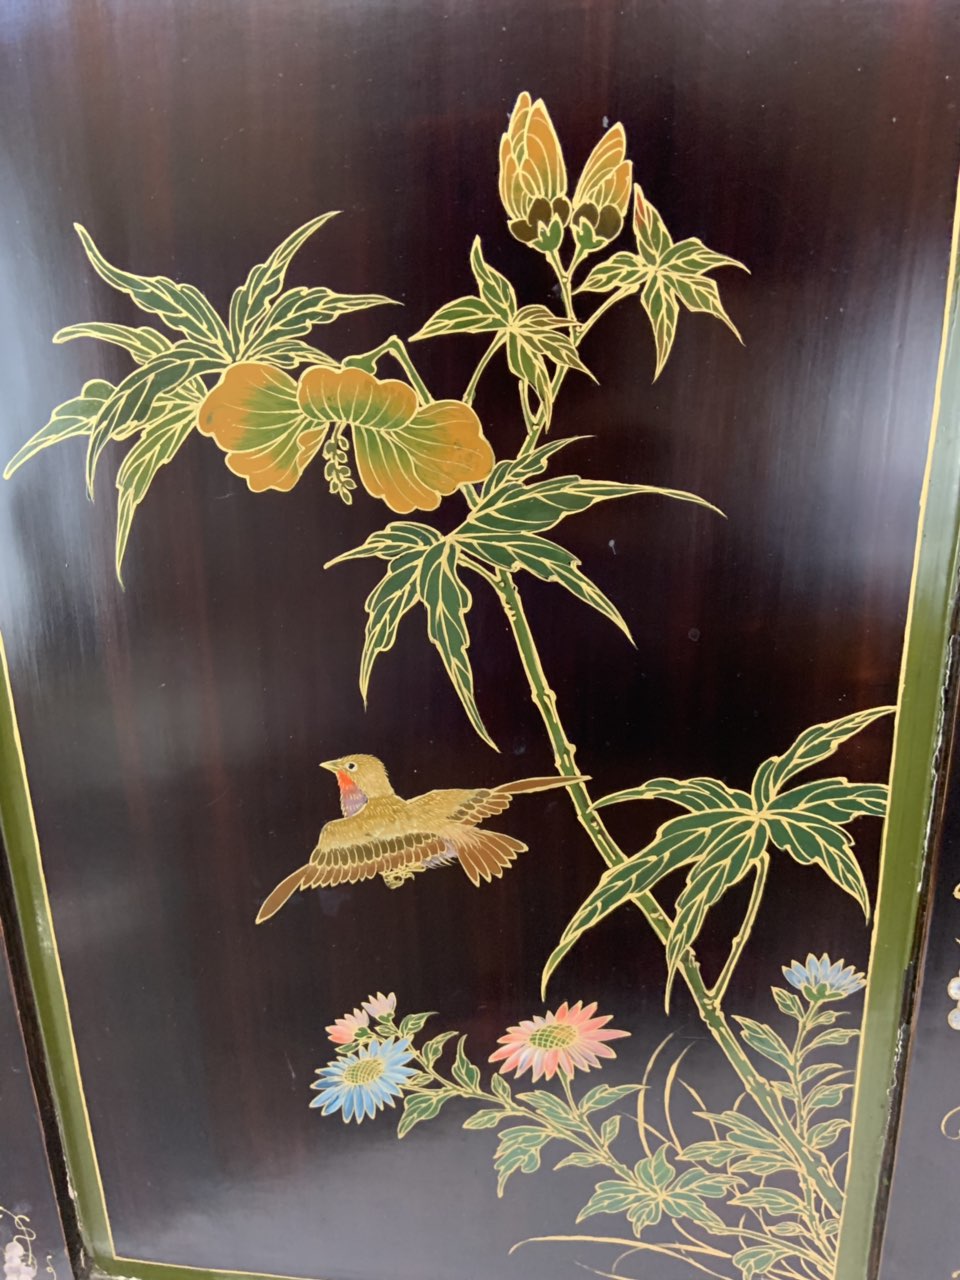 Винтажный шкафчик в стиле Шинуазри